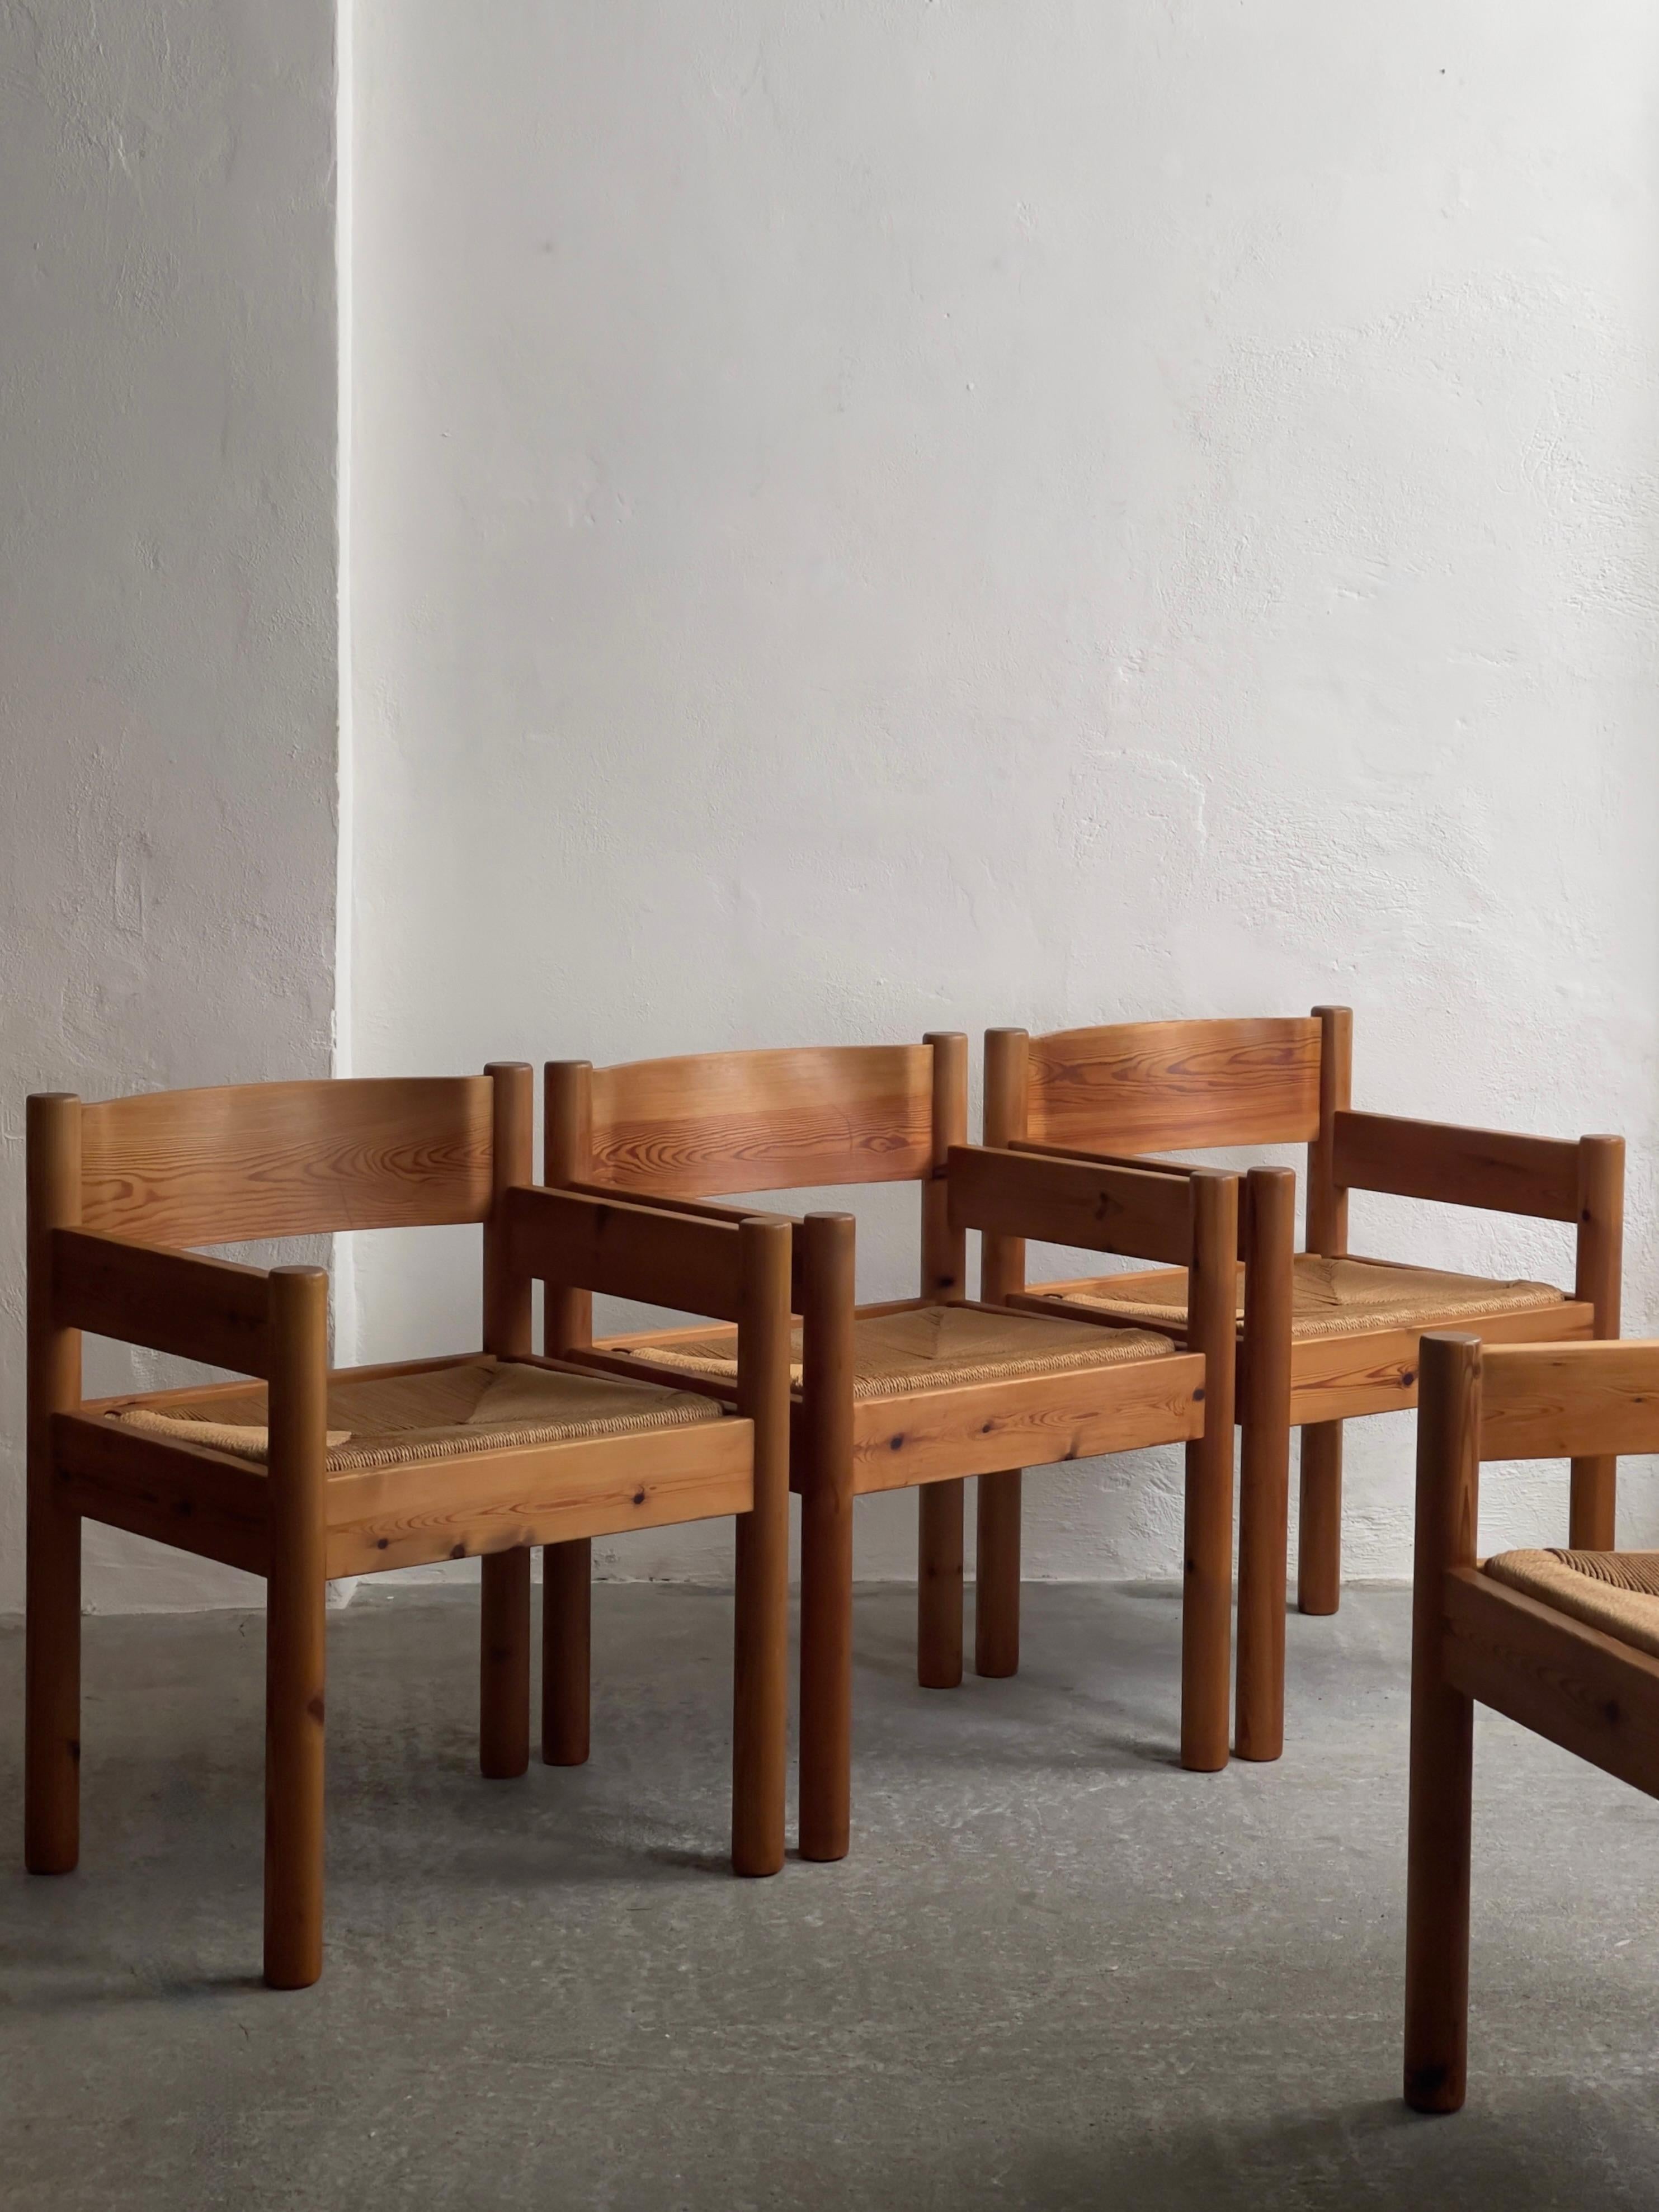 Un ensemble de 4 originales et très rares chaises de salle à manger modernistes des années 1970 en pin massif et Corde en papier par les architectes pionniers danois Friis & Moltke, Danemark.

Ces chaises ont été très bien fabriquées par un ébéniste